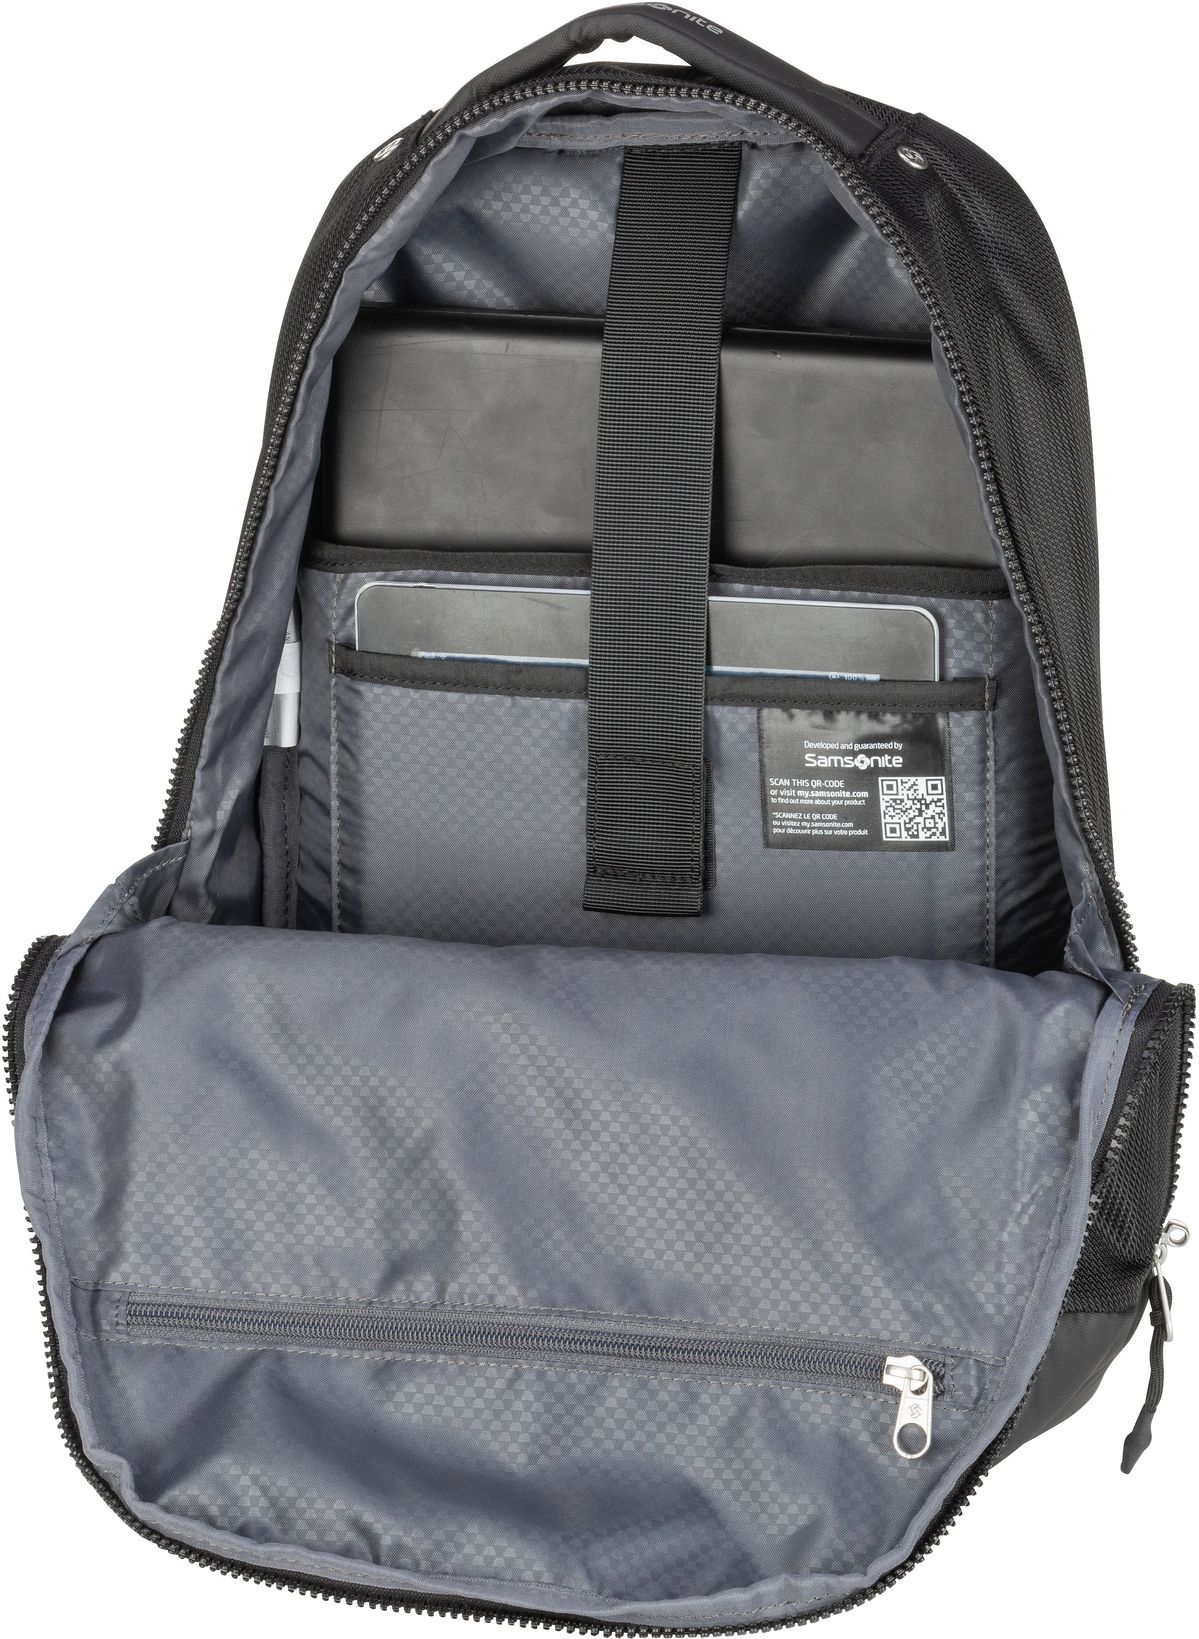 Samsonite Midtown Laptop Backpack S - Black